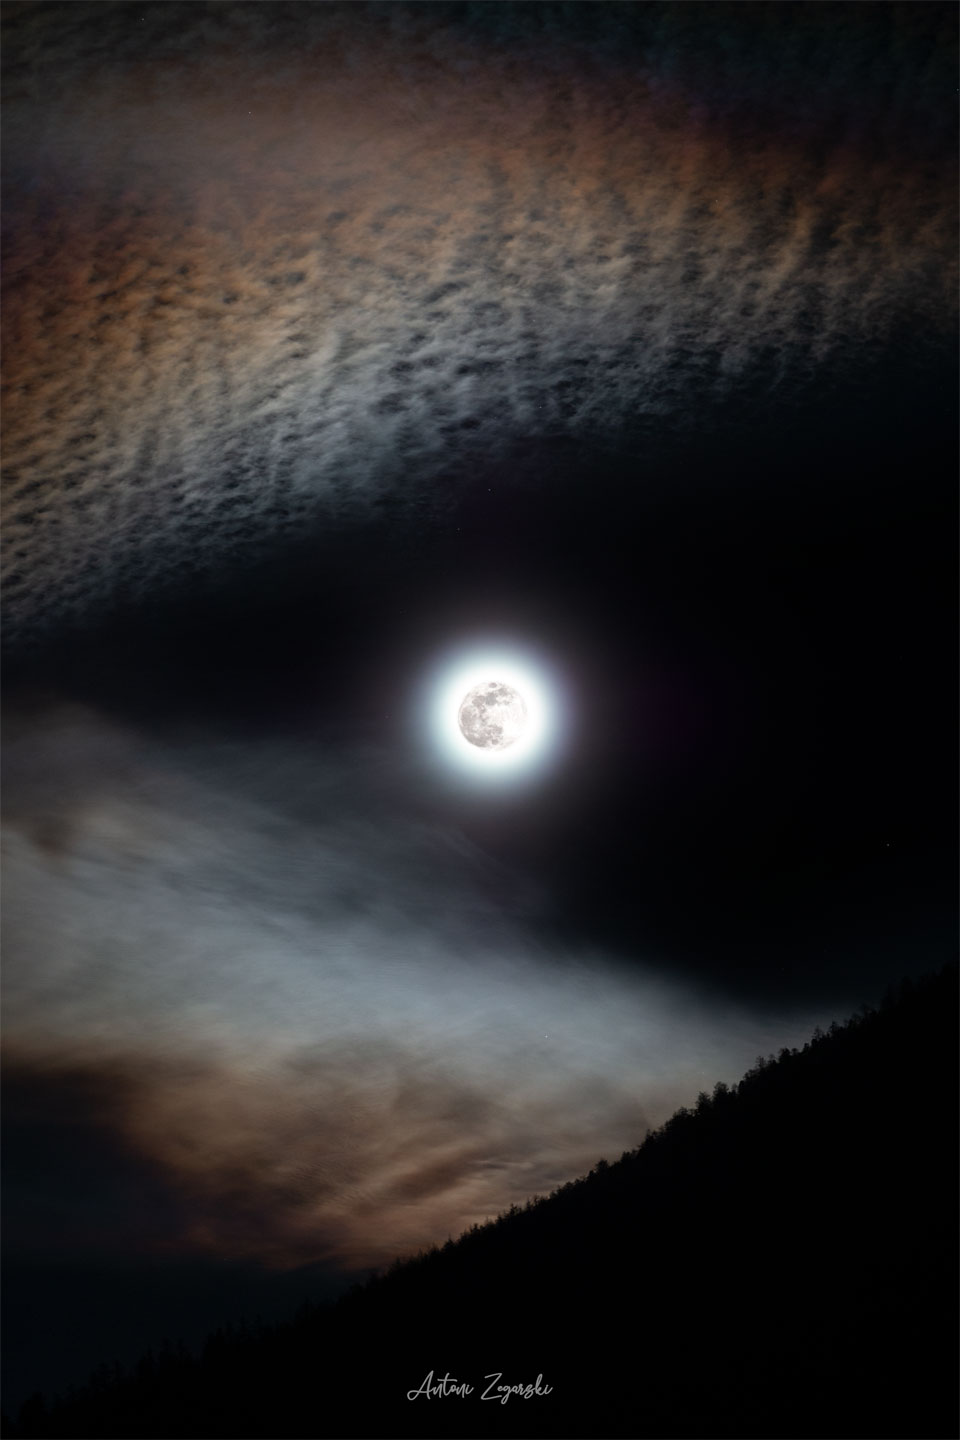 W centrum zdjęcia widoczny jest jasny Księżyc w pełni.
Wokół jego krawędzi znajdują się kanciaste chmury, przez które
Księżyc wyglądają, jakby tworzyły oczy lub pysk wilka.
Zobacz opis. Po kliknięciu obrazka załaduje się wersja
o największej dostępnej rozdzielczości.